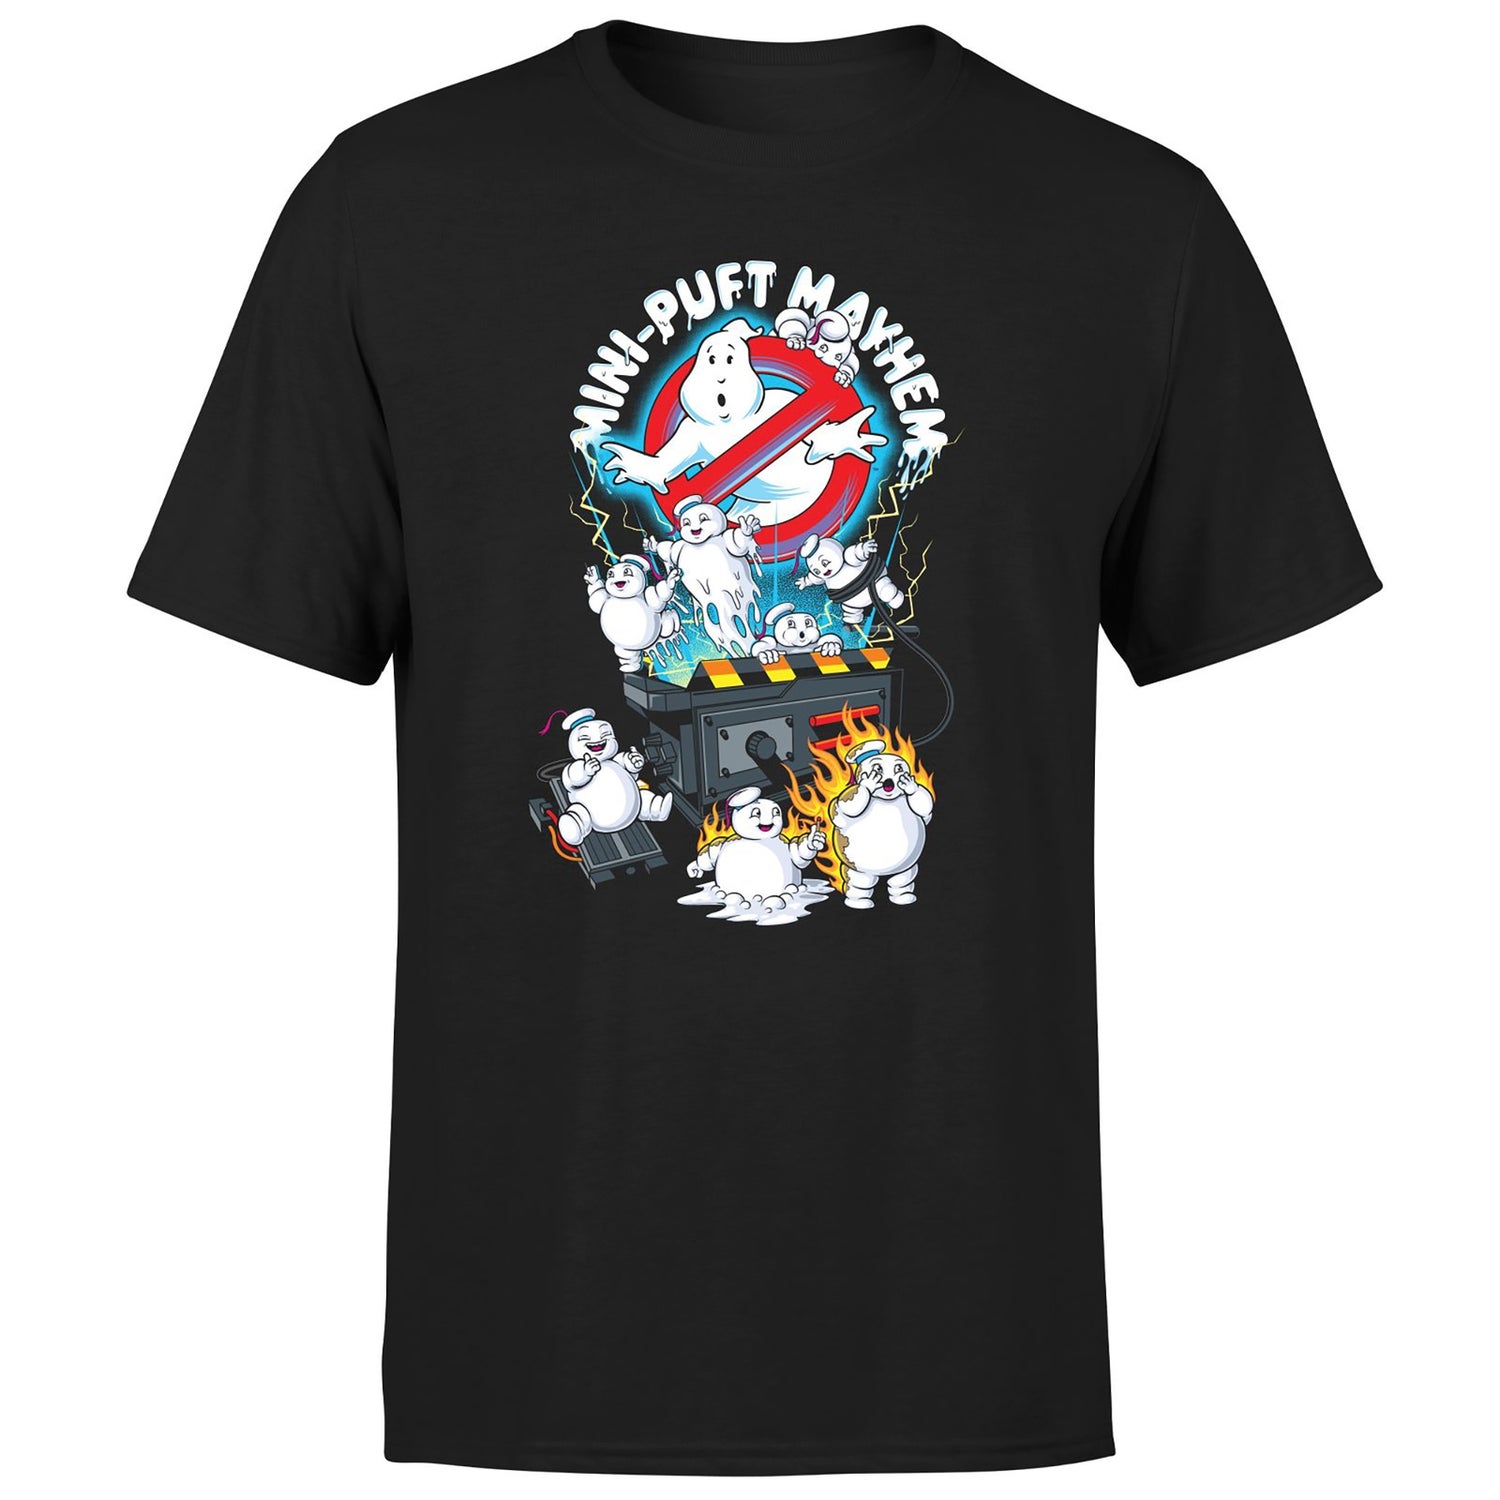 Ghostbusters Mini-Puft Mayhem Men's T-Shirt - Black